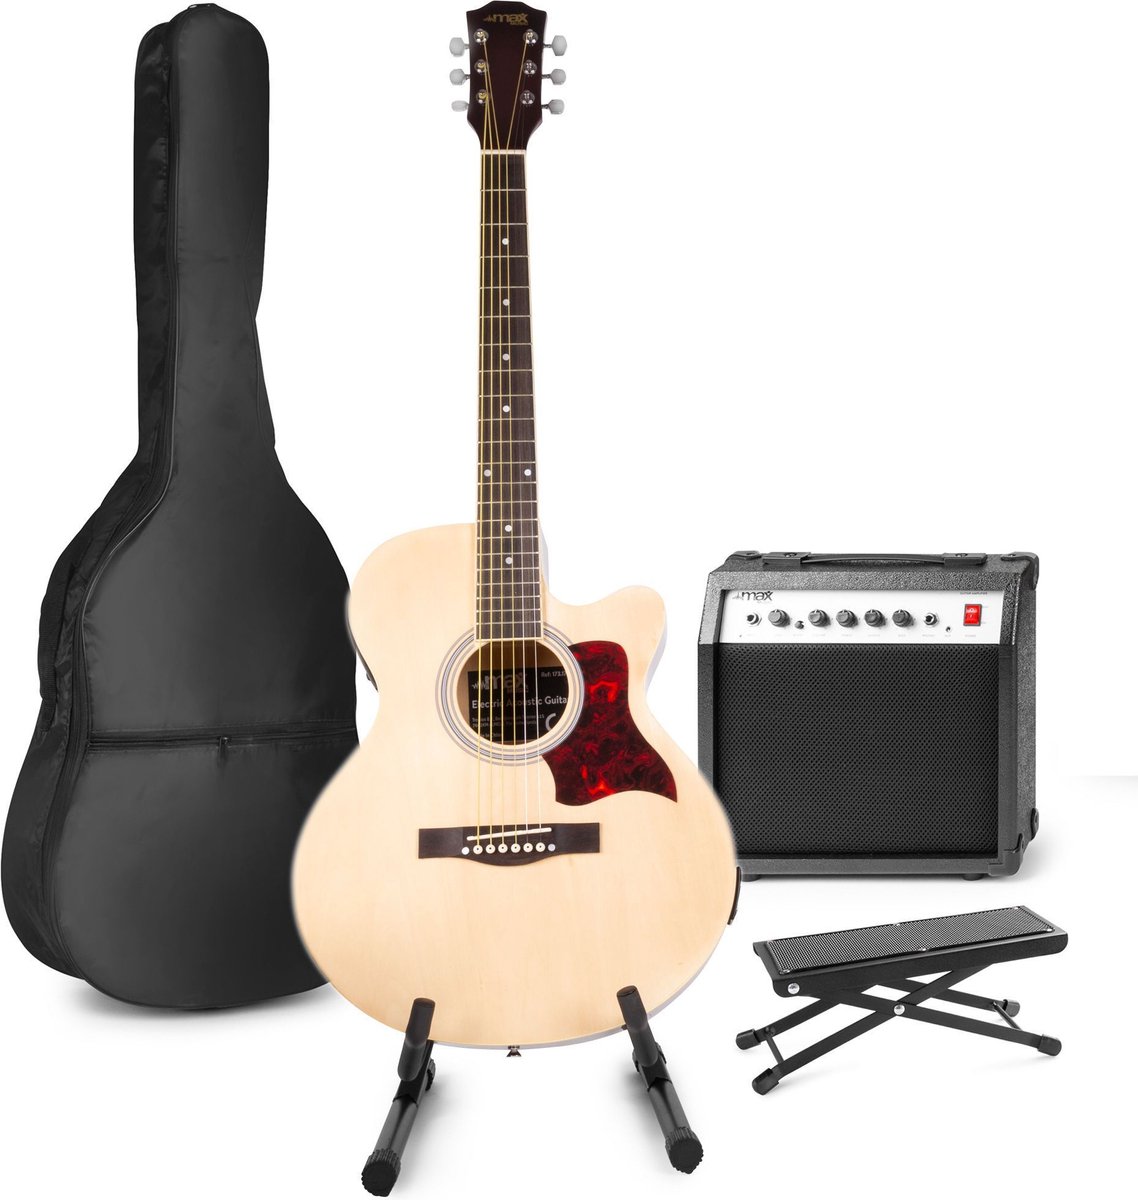 Elektrisch akoestische gitaar - MAX ShowKit gitaarset met 40W gitaar versterker, gitaar standaard, gitaar voetenbankje, gitaar stemapparaat, gitaartas en plectrum - Hout